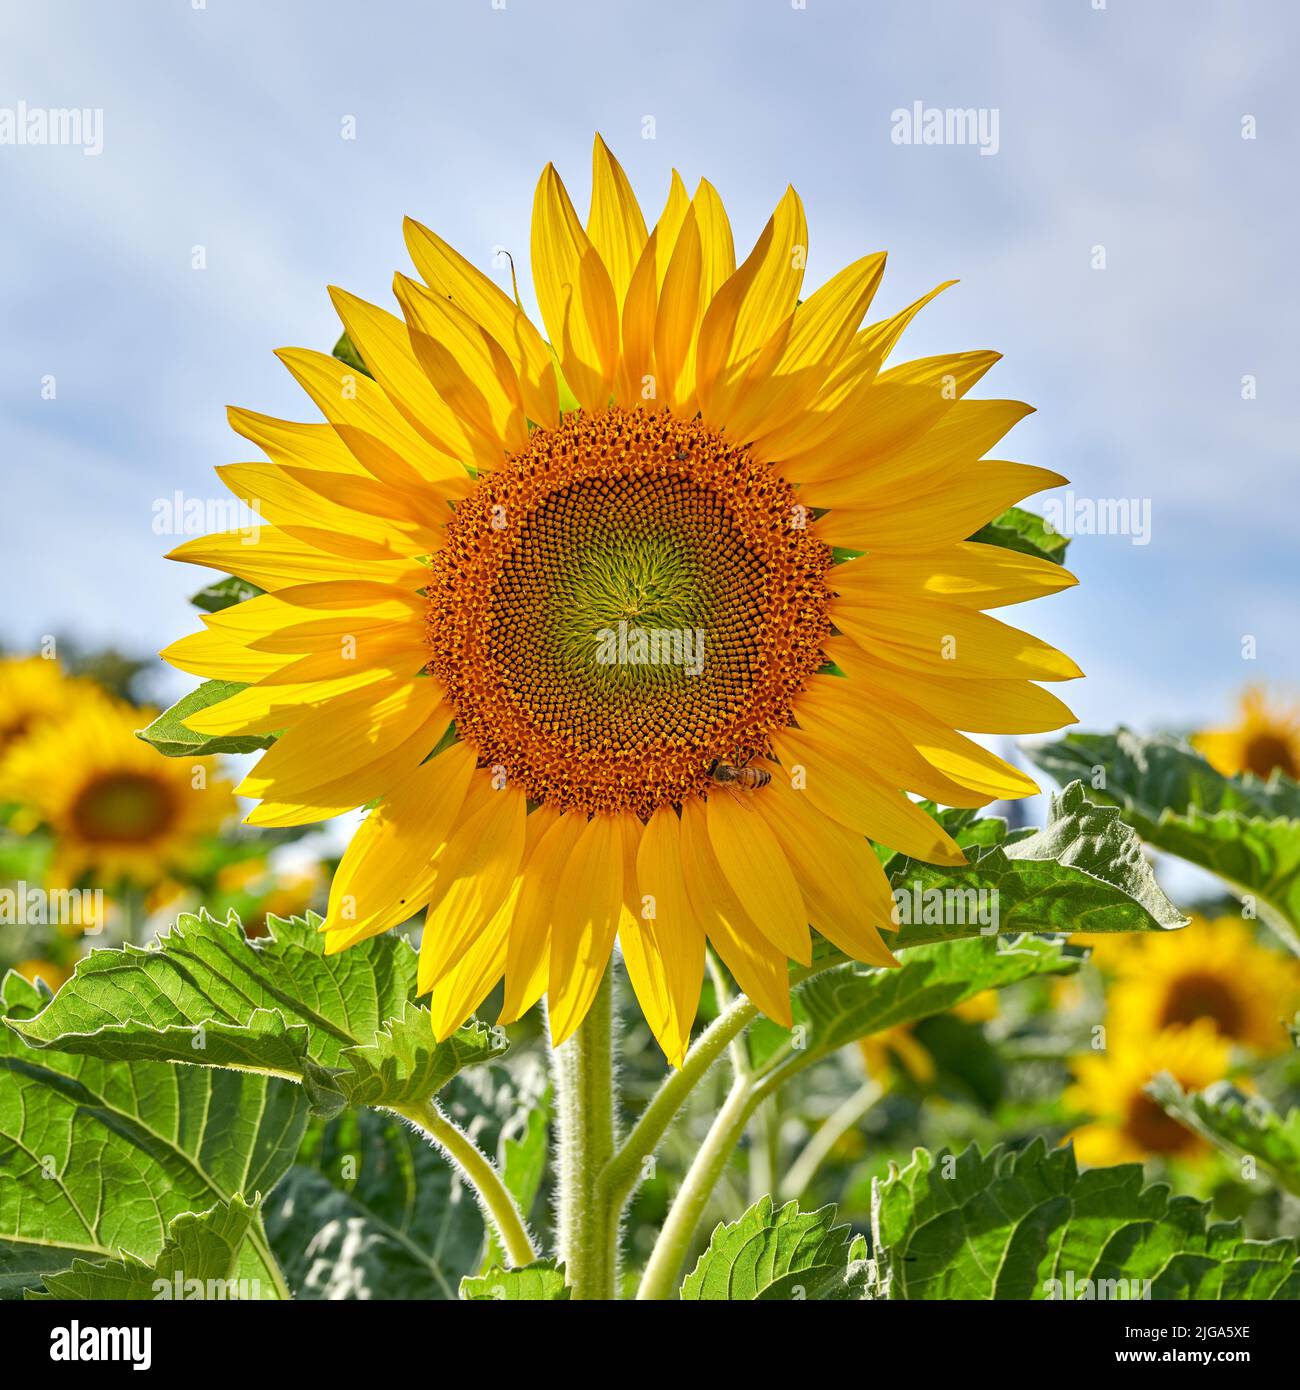 Riesige russische Sonnenblumen, die an einem hellen Tag in einem Feld oder botanischen Garten wachsen. Nahaufnahme von helianthus annuus mit leuchtend gelben Blütenblättern, die einblühen Stockfoto